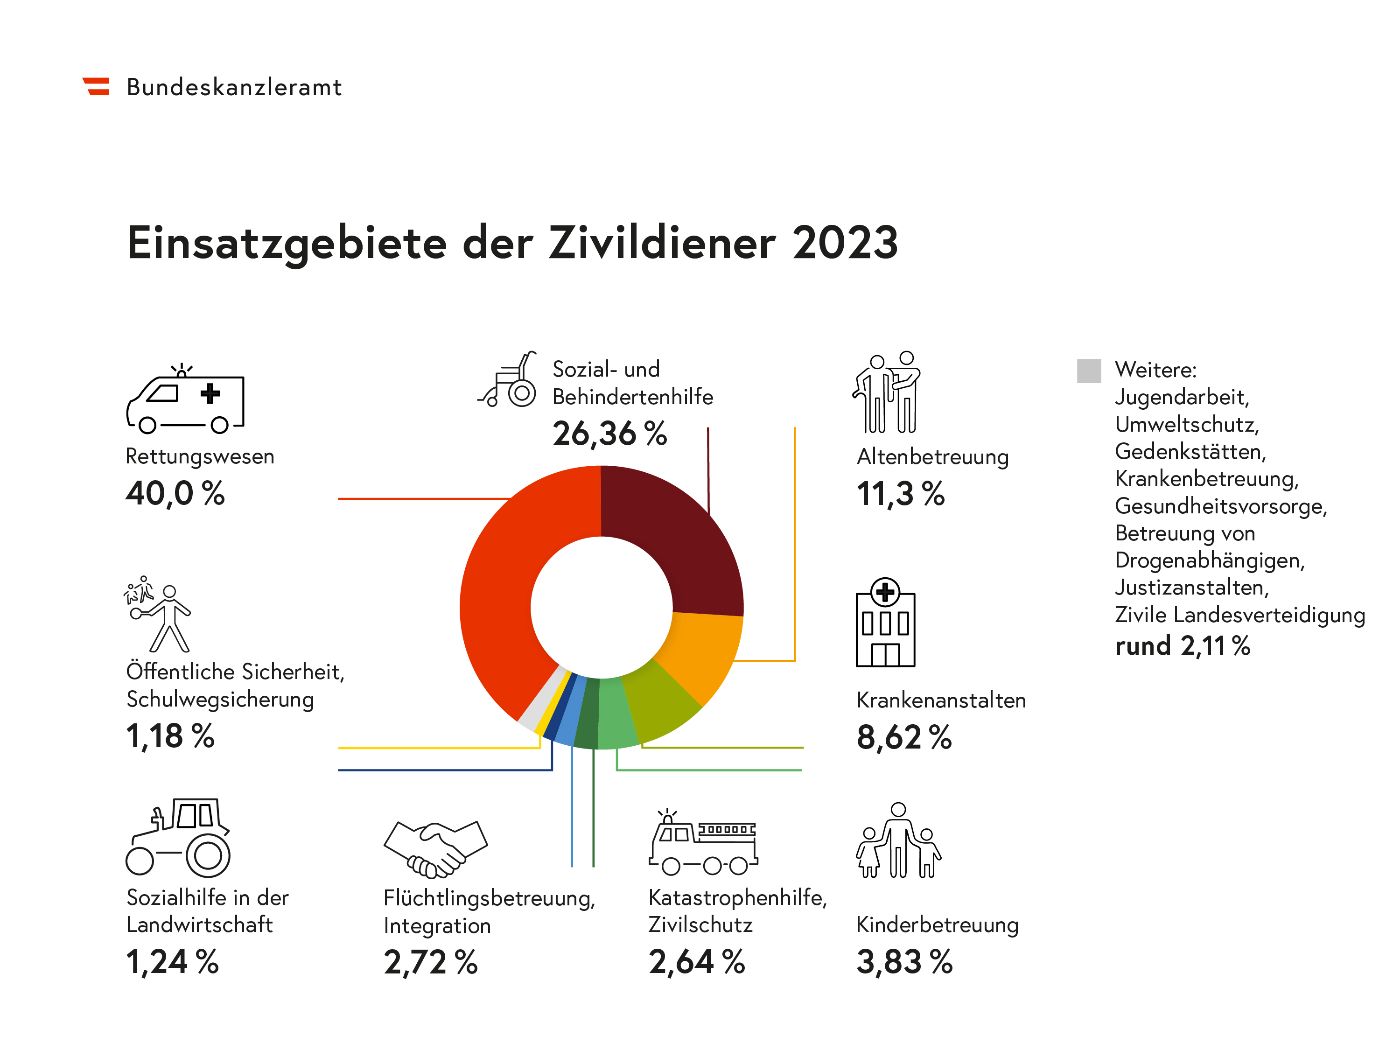 Die Grafik zeigt, wie viele Zivildiener im Jahr 2023 in den verschiedenen Einsatzgebieten zugewiesen wurden.